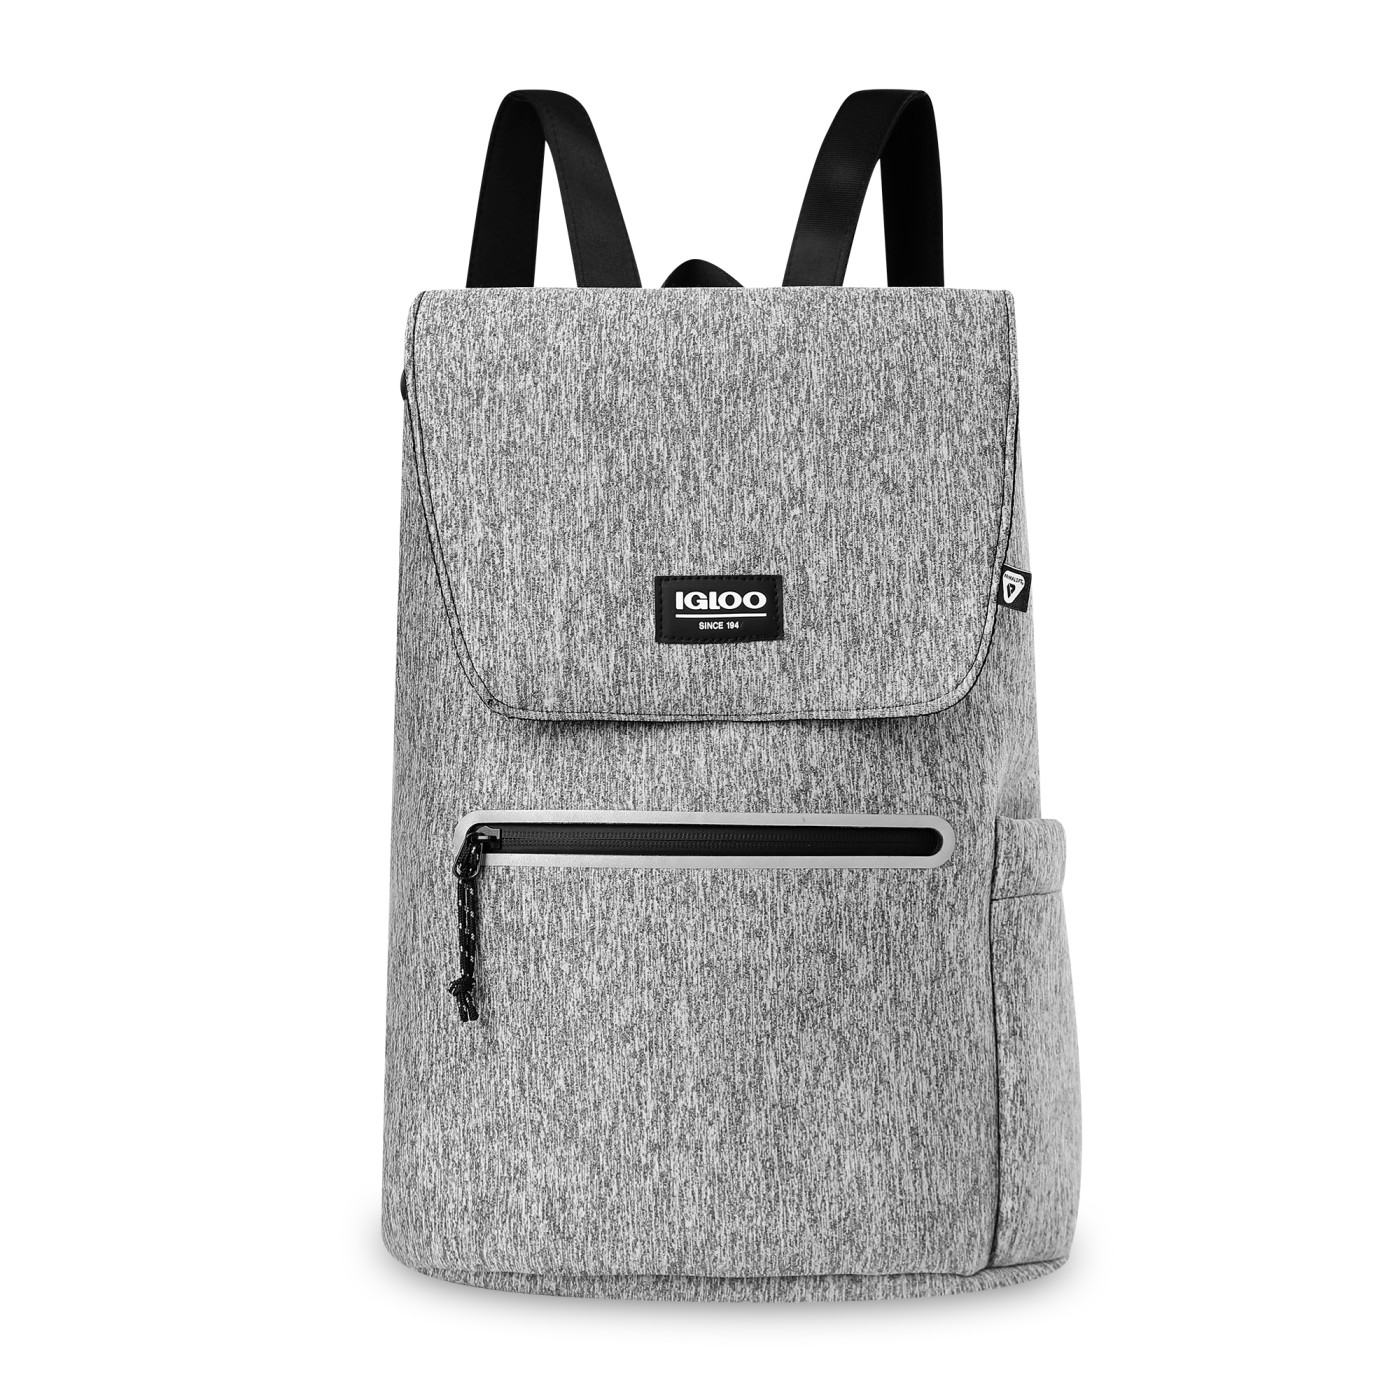 Igloo 101666 - Moxie Cinch Backpack Cooler